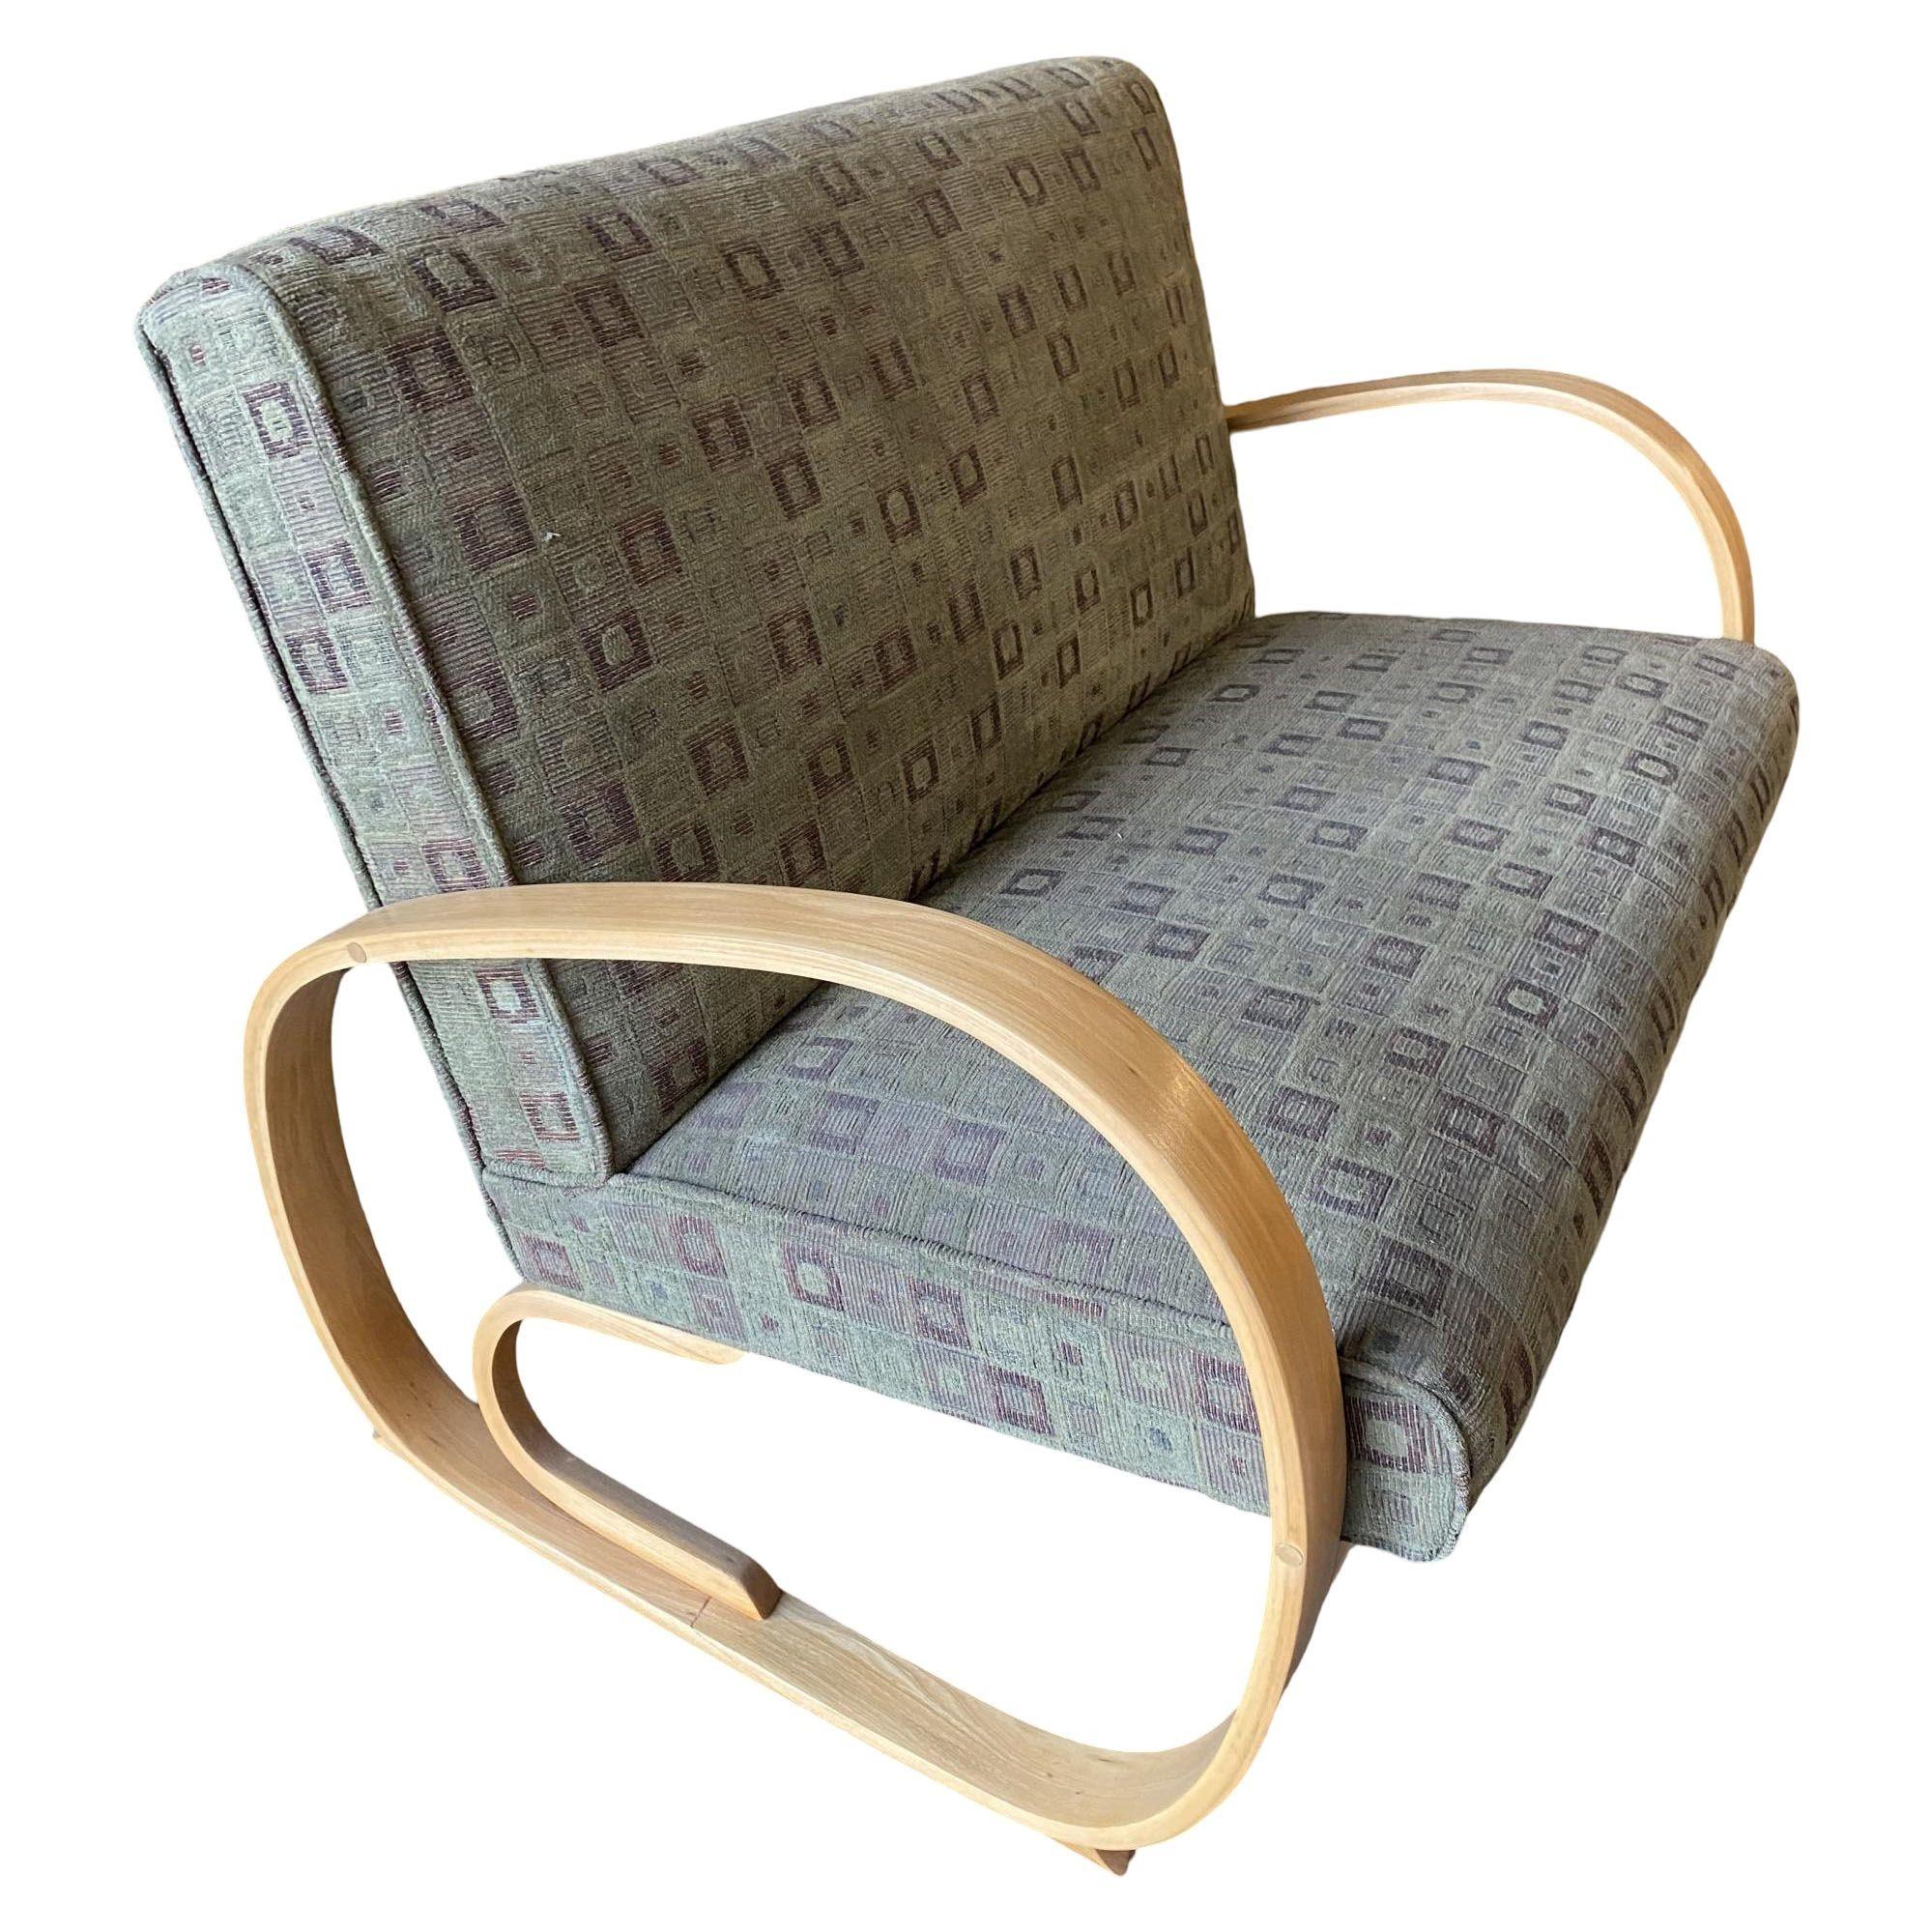 Das von Gilbert Rohde entworfene stromlinienförmige Sofa und der dazu passende Loungesessel sind beide mit einer schwebenden Garnitur und geformten Art-Déco-Armen ausgestattet.

Messungen
Sofaecke: 45